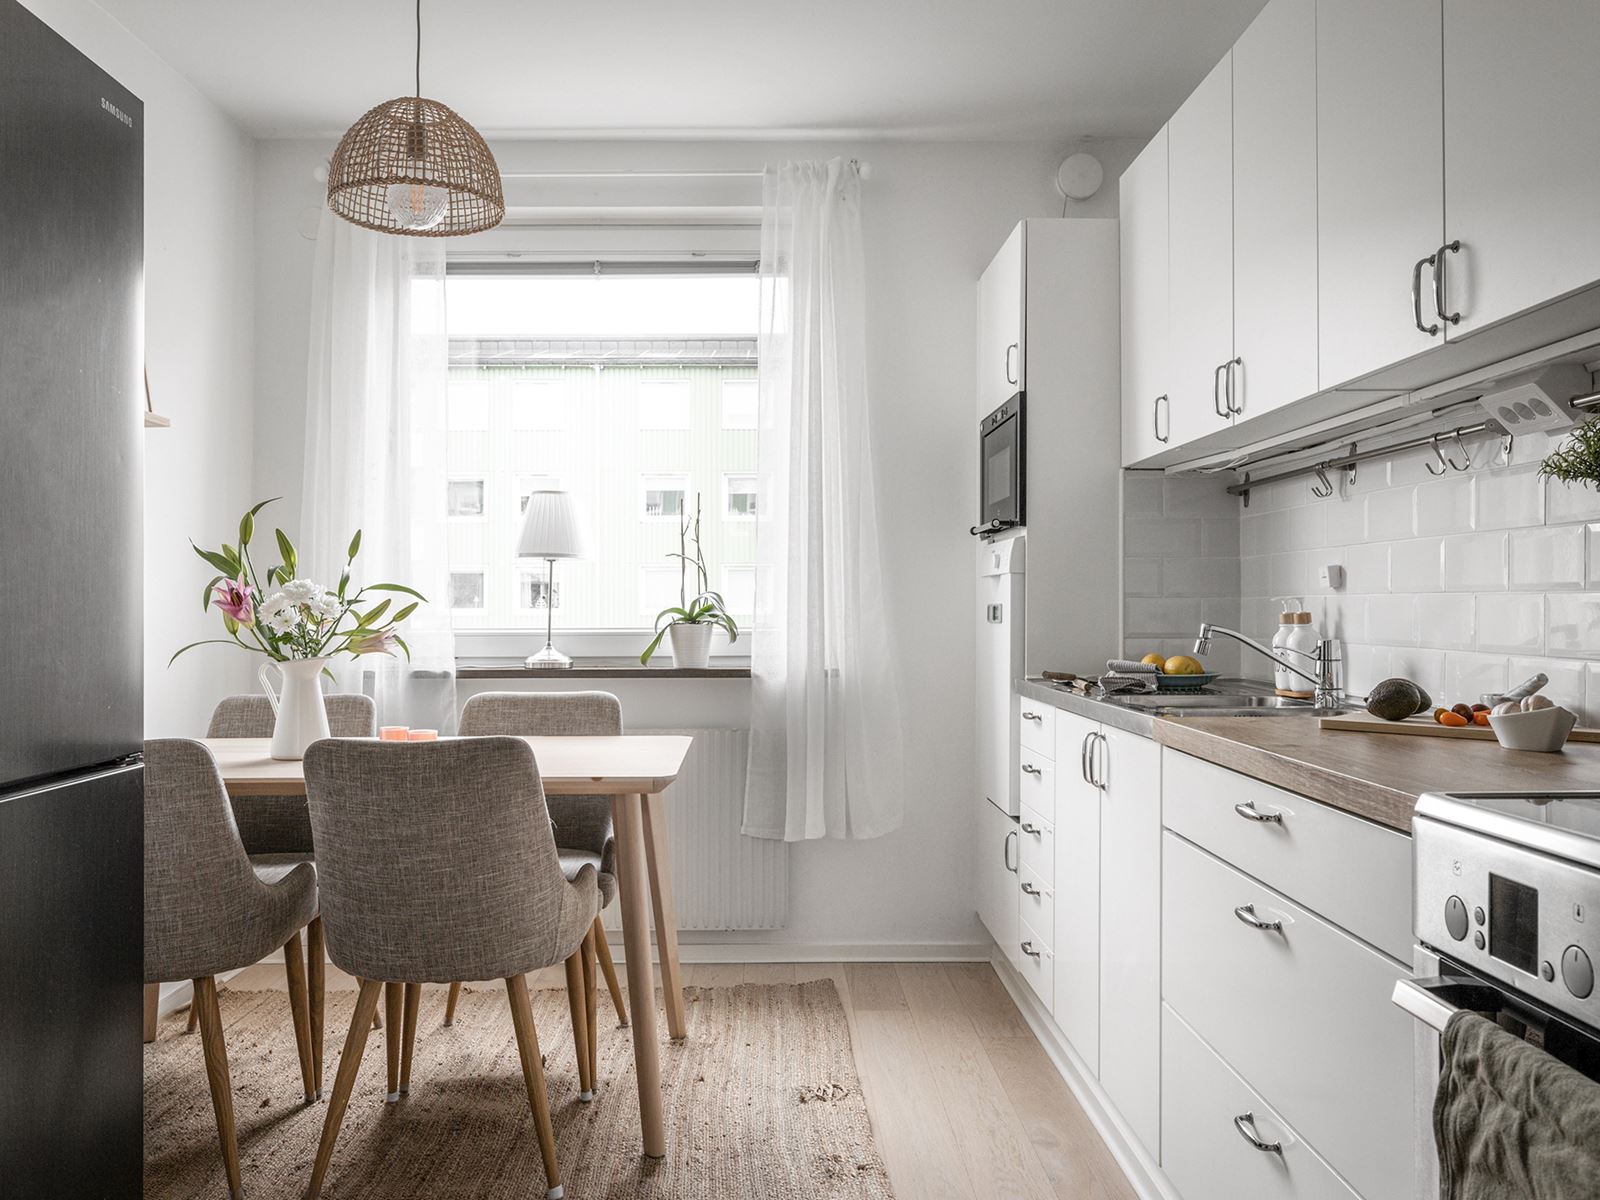 Här presenteras 2 rum och kök med renoverad interiör och låg månadskostnad.. Östra Storgatan 101A - Bjurfors